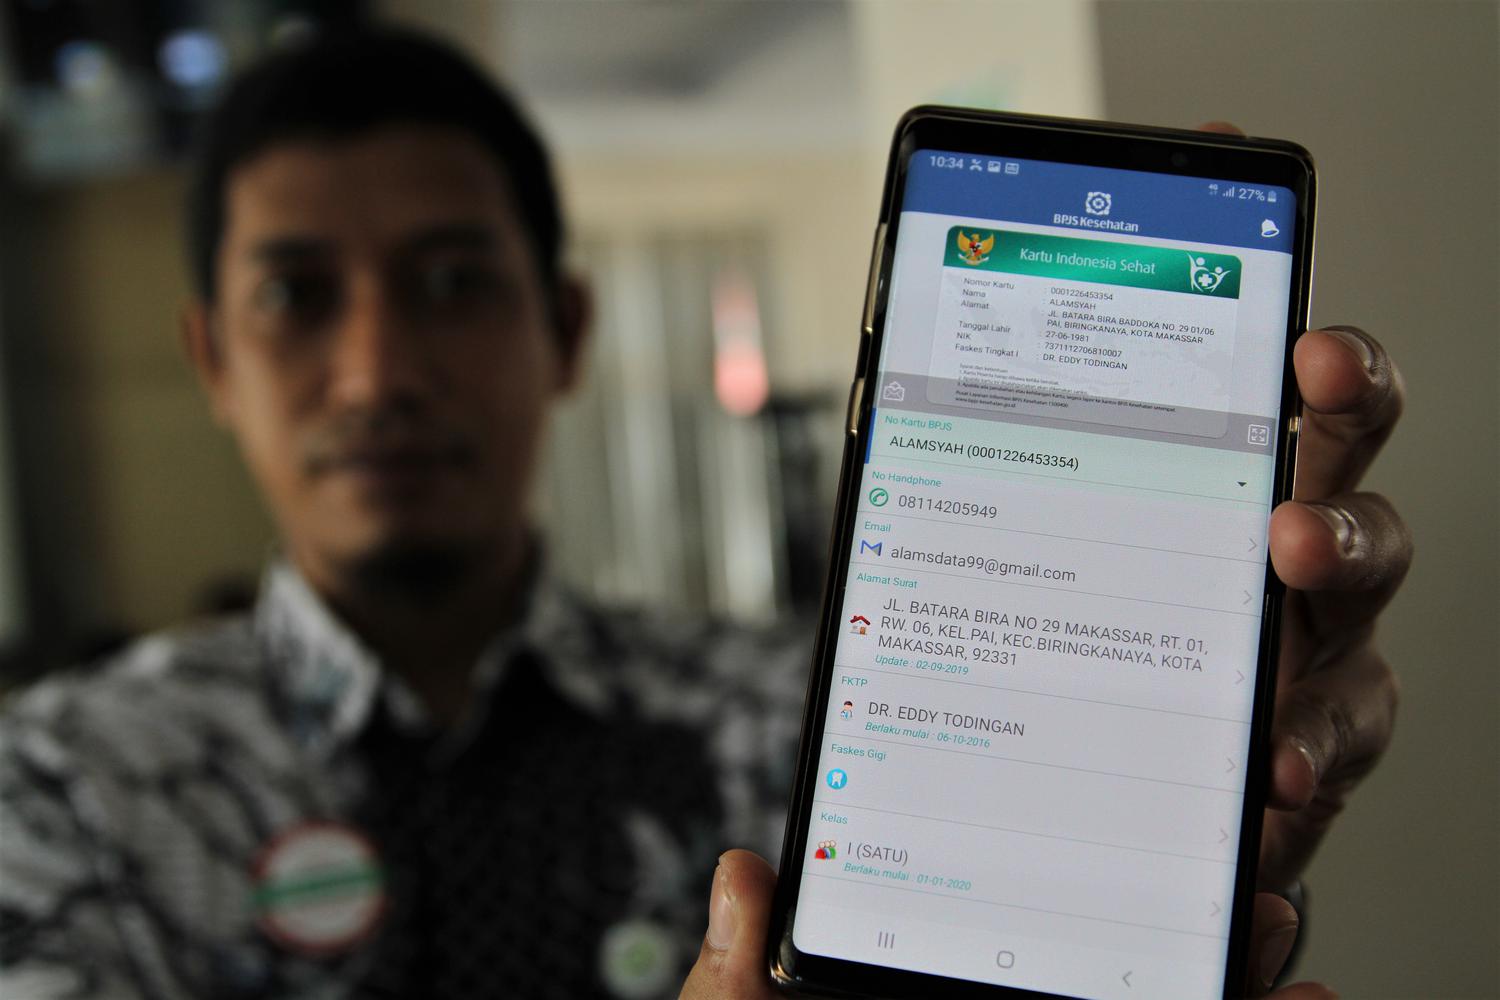 Petugas menunjukkan Aplikasi Mobile Jaminan Kesehatan Nasional (JKN) BPJS Kesehatan di Kantor BPJS Kesehatan Kendari, Sulawesi Tenggara, Rabu (8/1/2020). BPJS Kesehatan mengeluarkan program Perubahan Kelas Tidak Sulit (Praktis) hingga 30 April 2020.